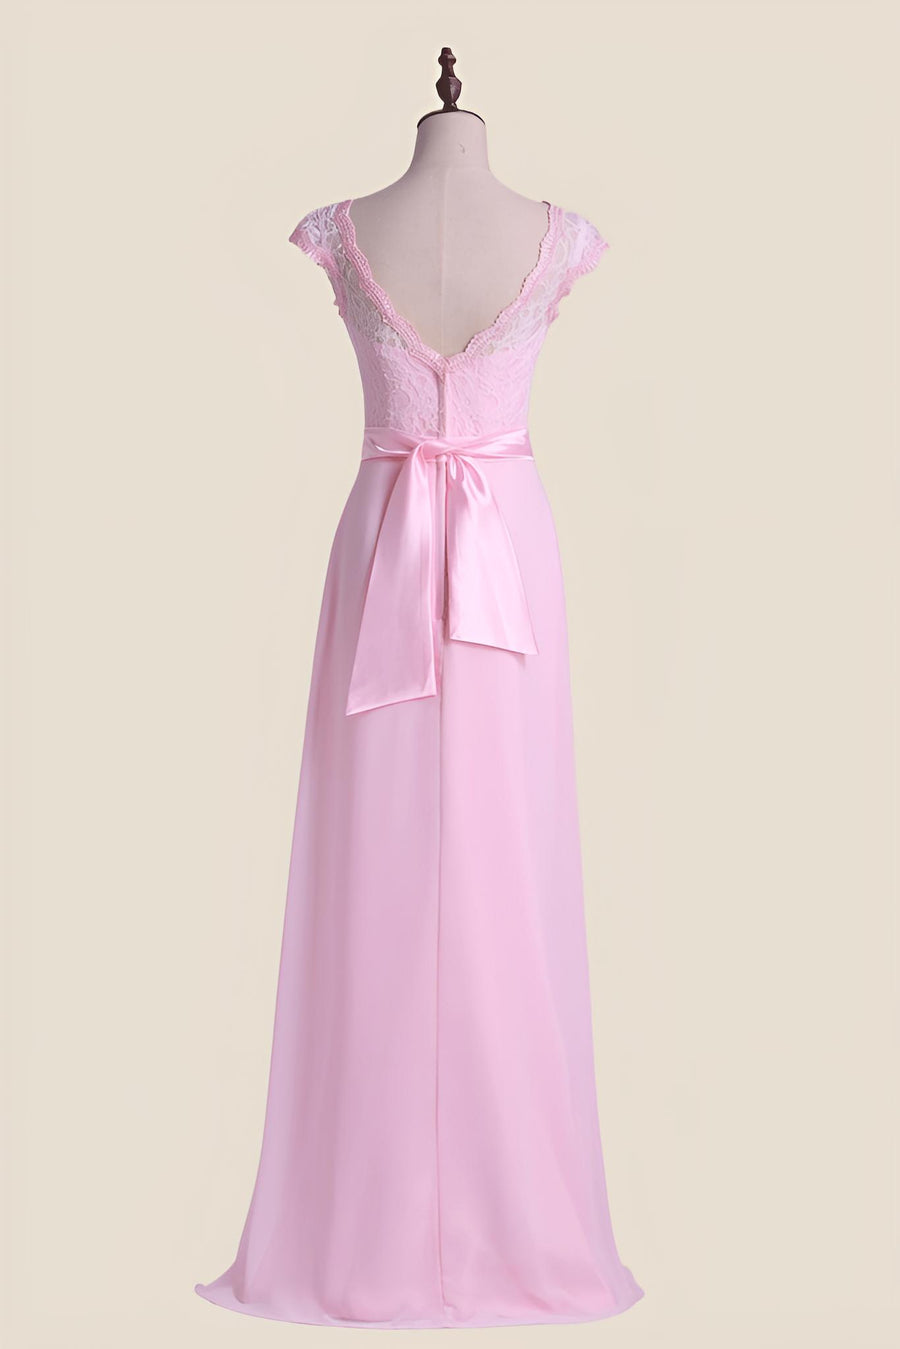 Cap Sleeves Pink Lace and Chiffon Long Bridesmaid Dress